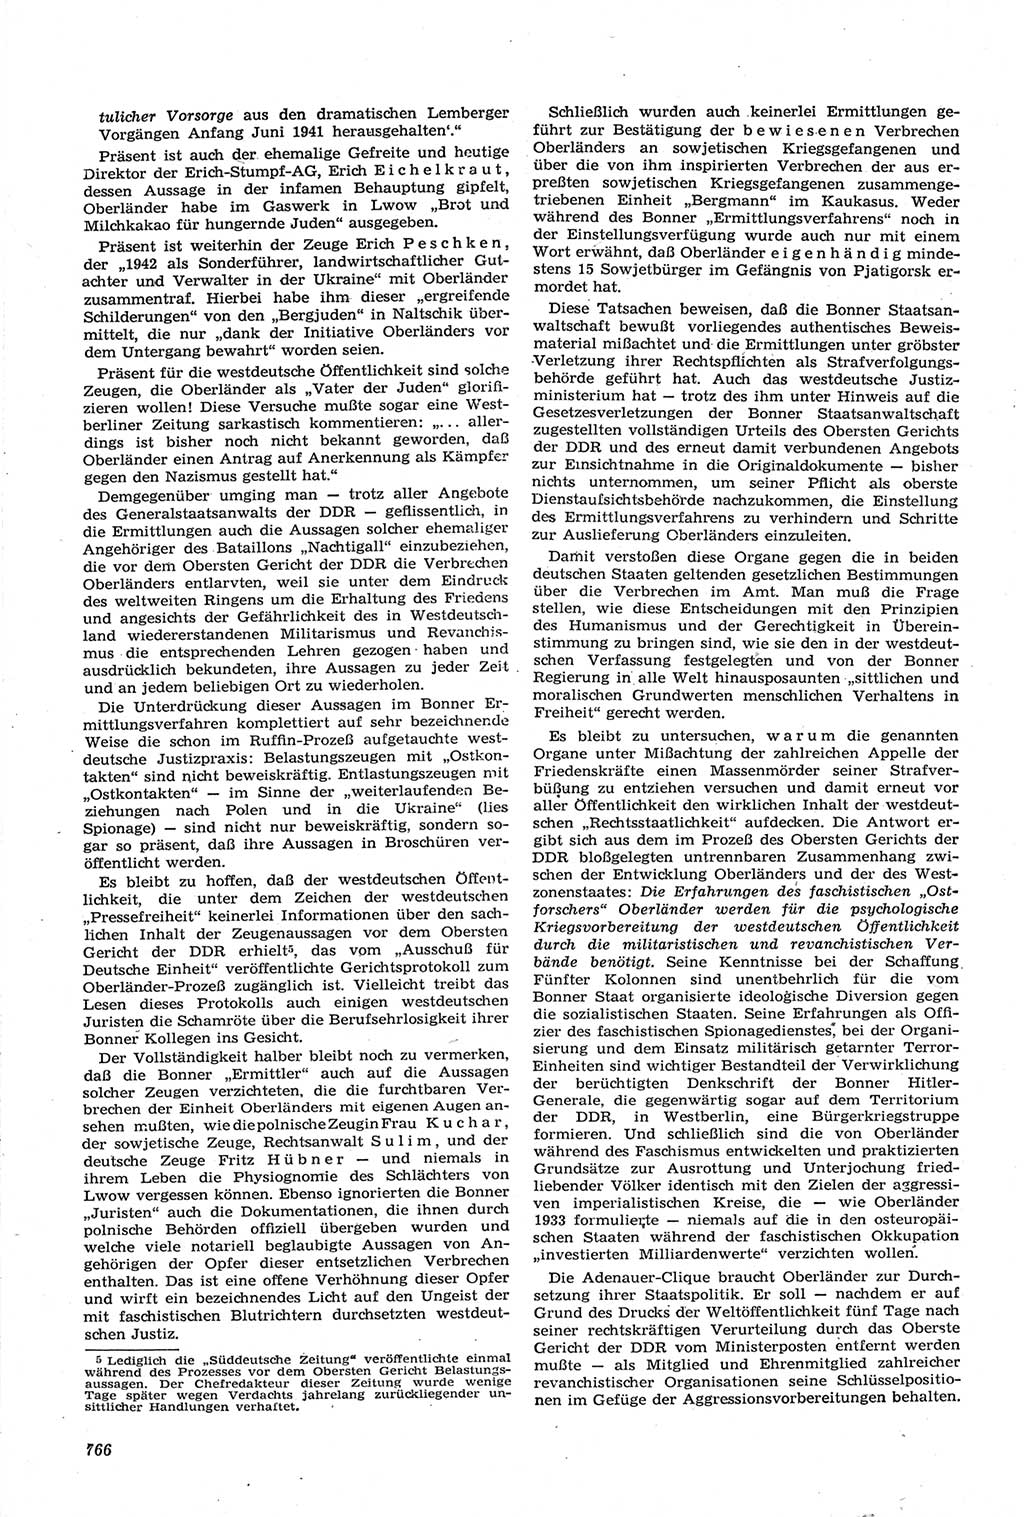 Neue Justiz (NJ), Zeitschrift für Recht und Rechtswissenschaft [Deutsche Demokratische Republik (DDR)], 14. Jahrgang 1960, Seite 766 (NJ DDR 1960, S. 766)